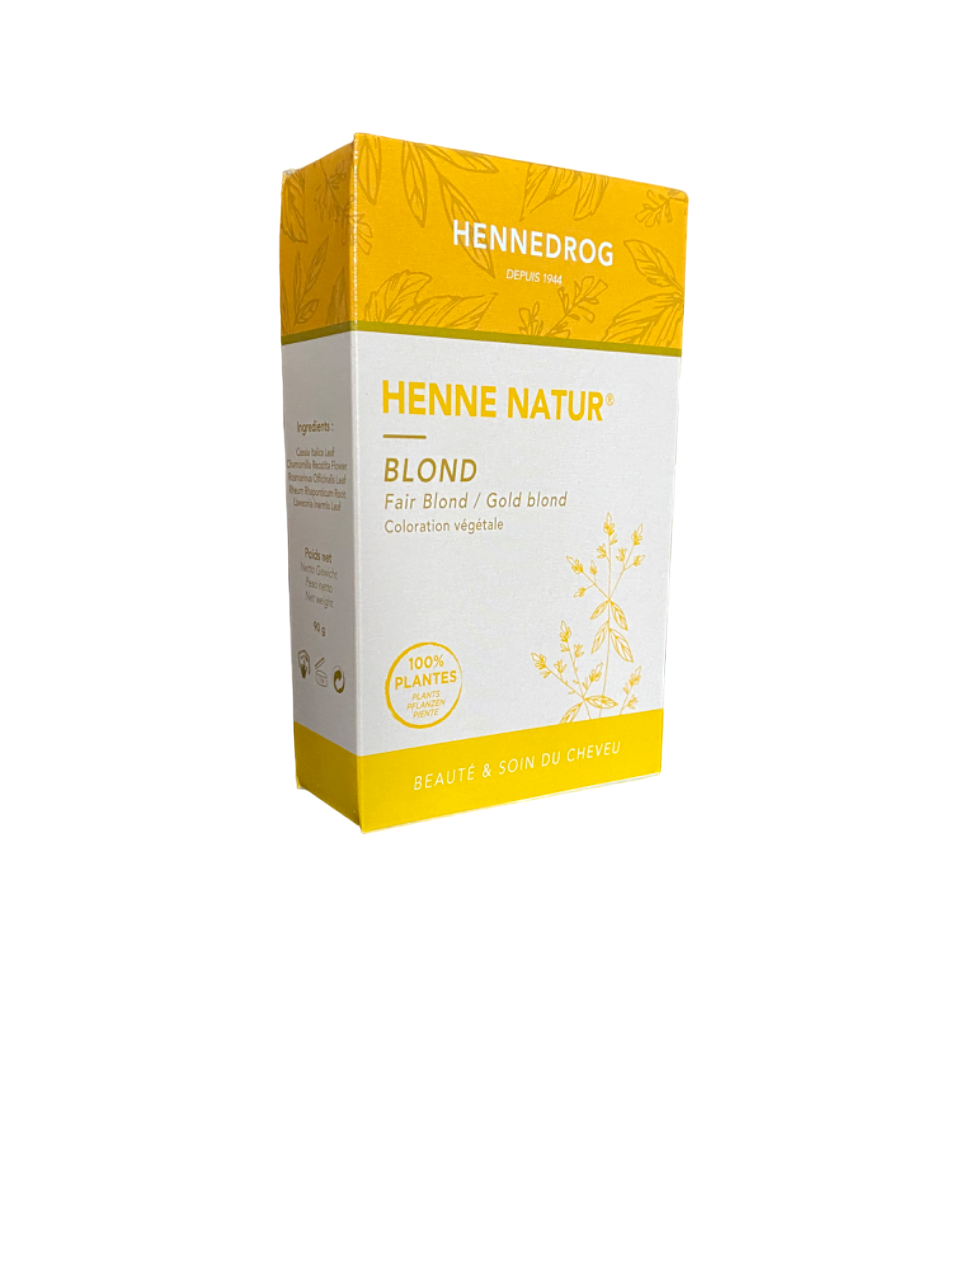 Blondes Henna – Hennedrog – Henne Natur – 90 g – 100 % Pflanzen – pflanzliche Farbstoffe